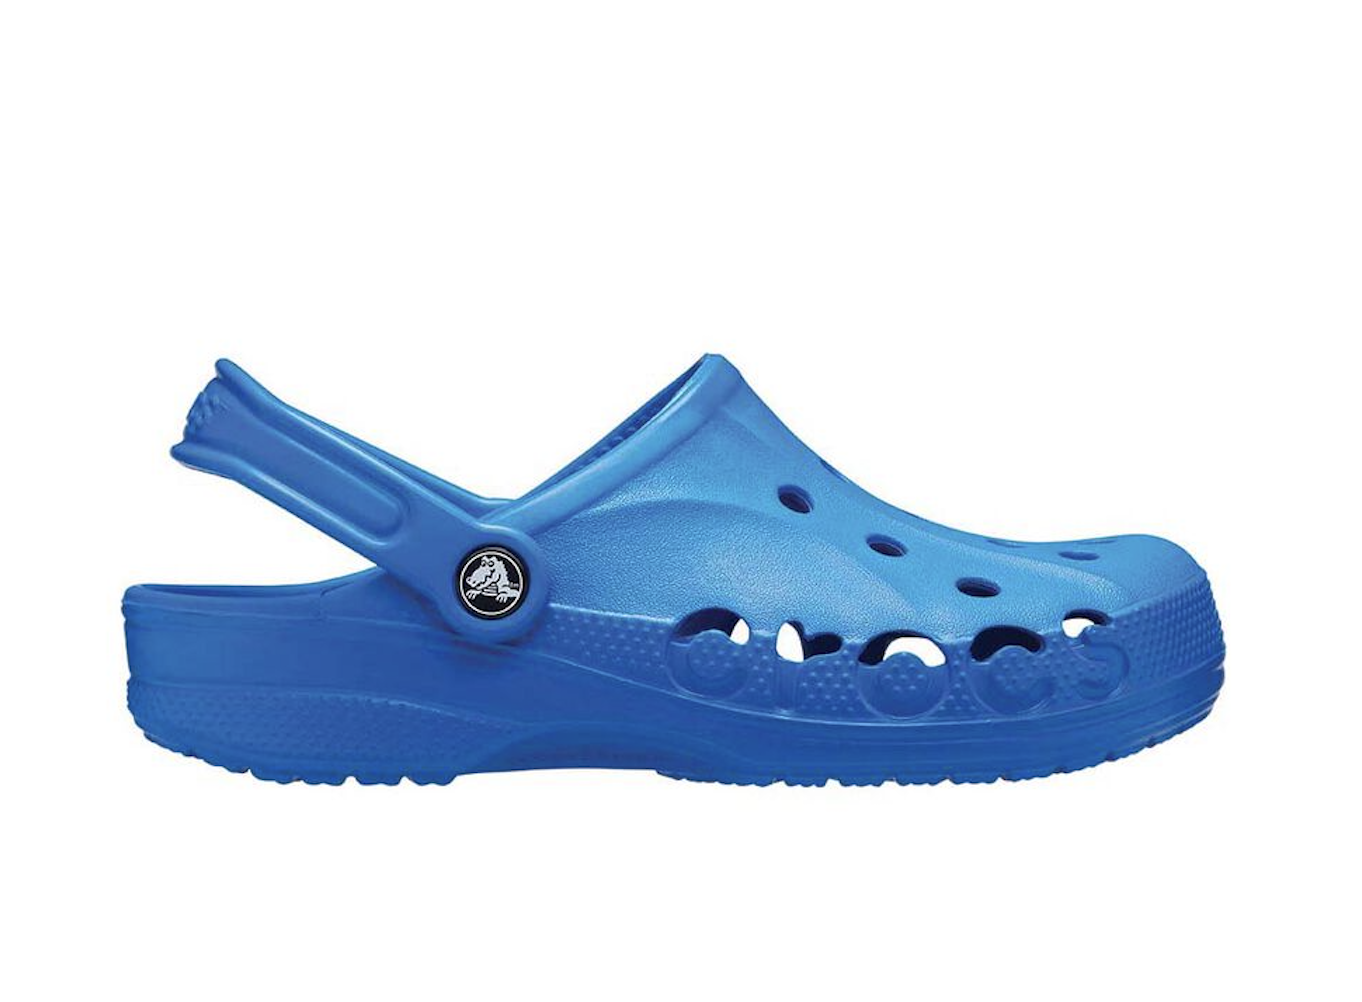 Blue crocs